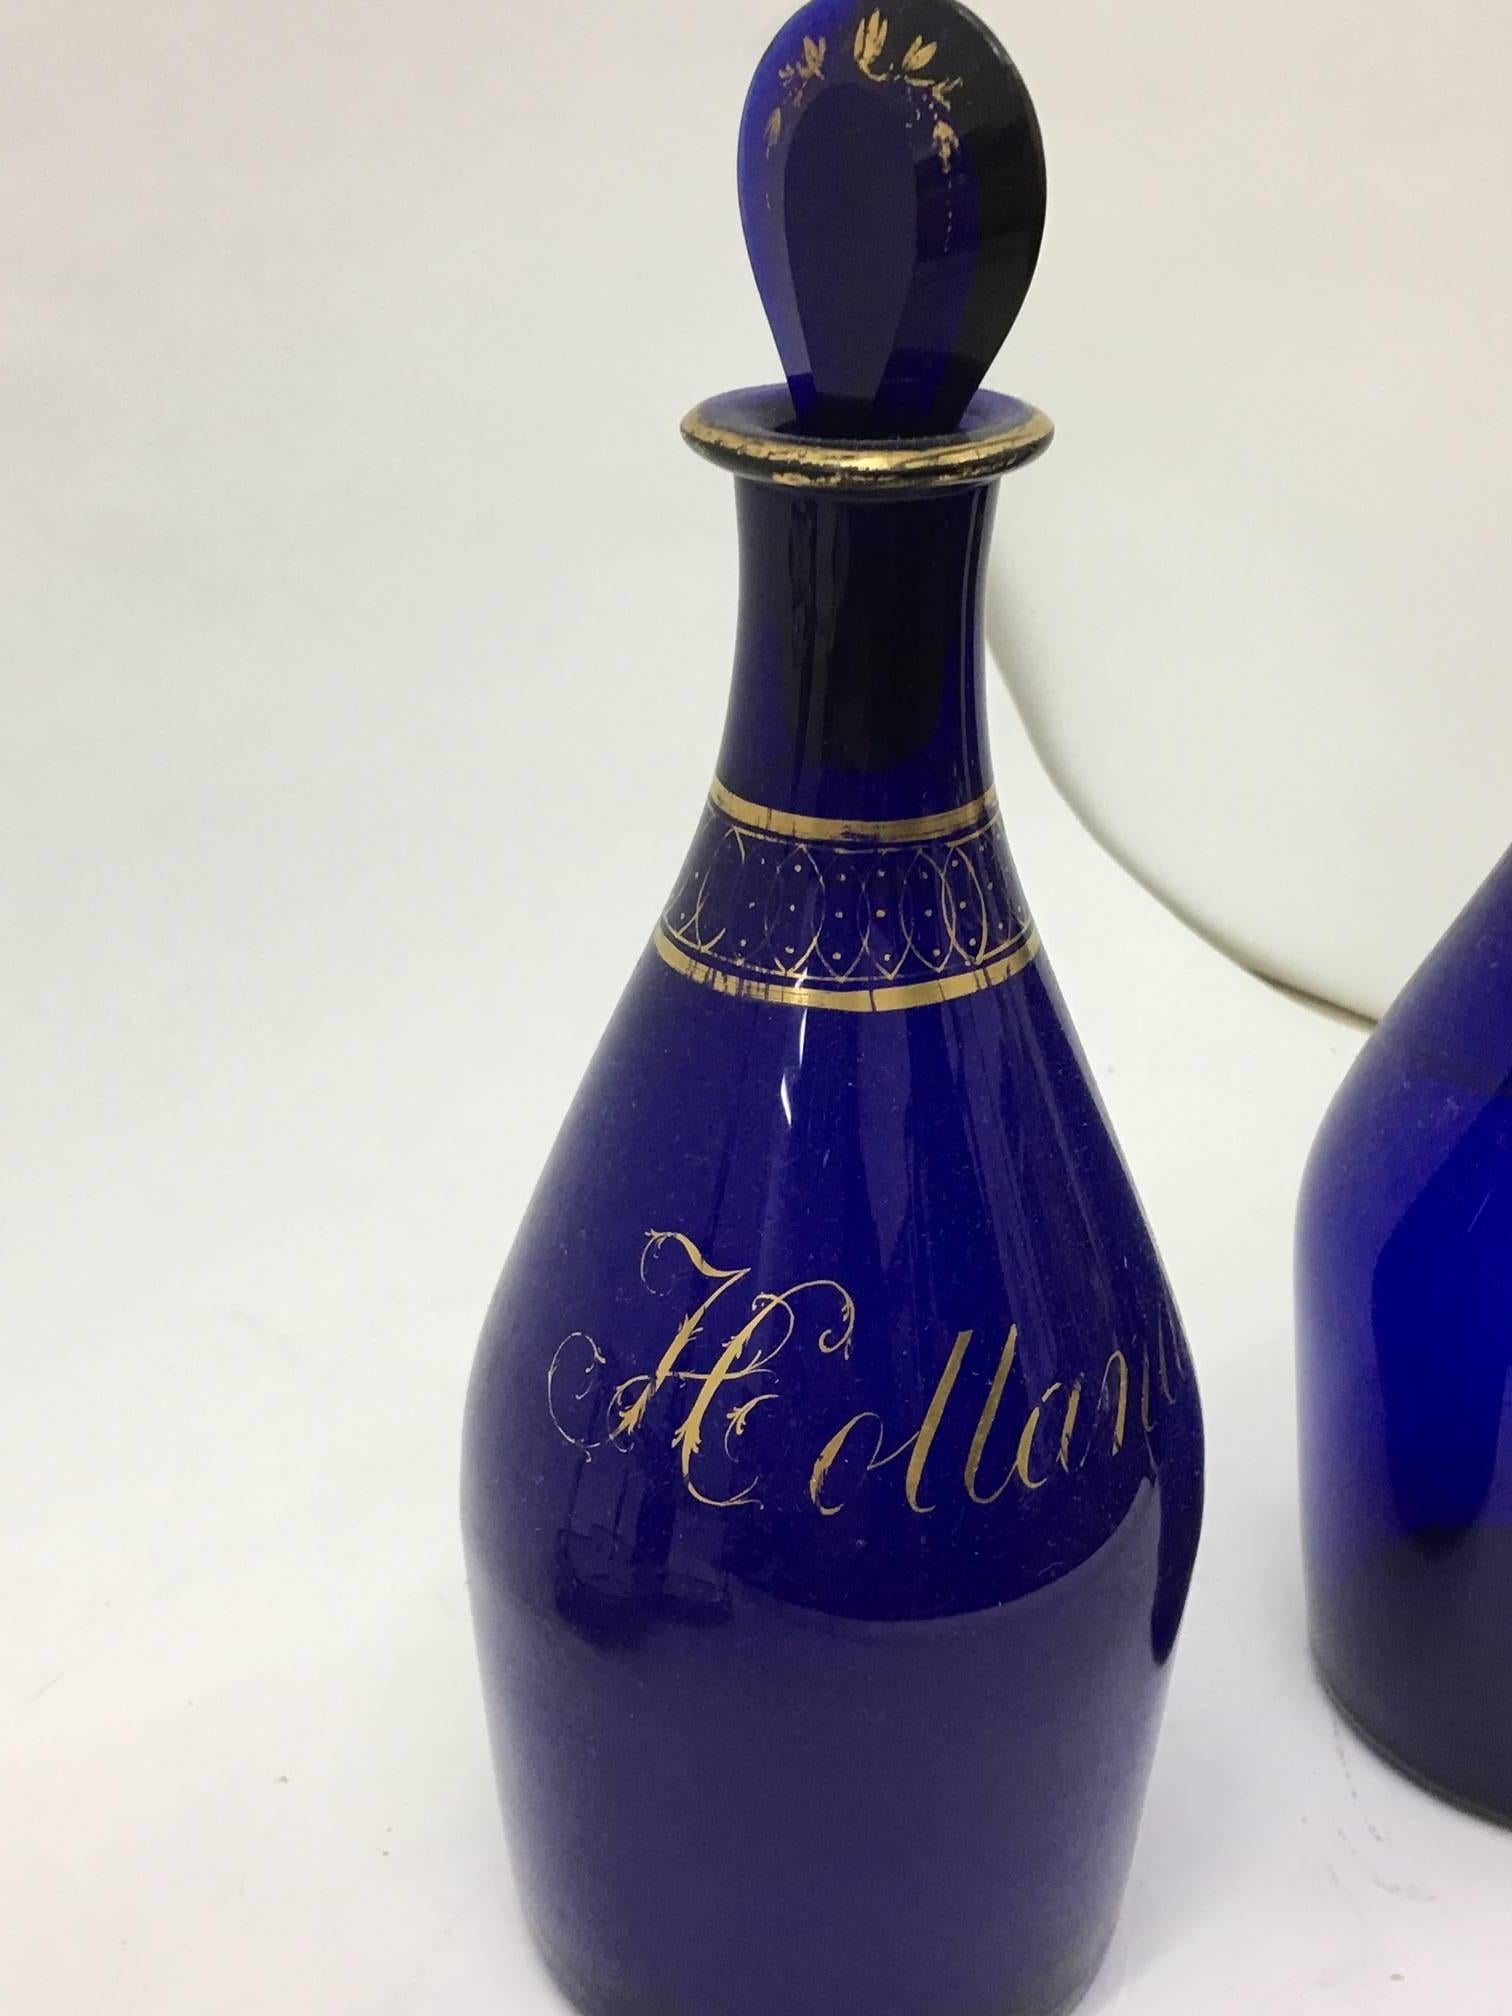 liquor in a blue bottle